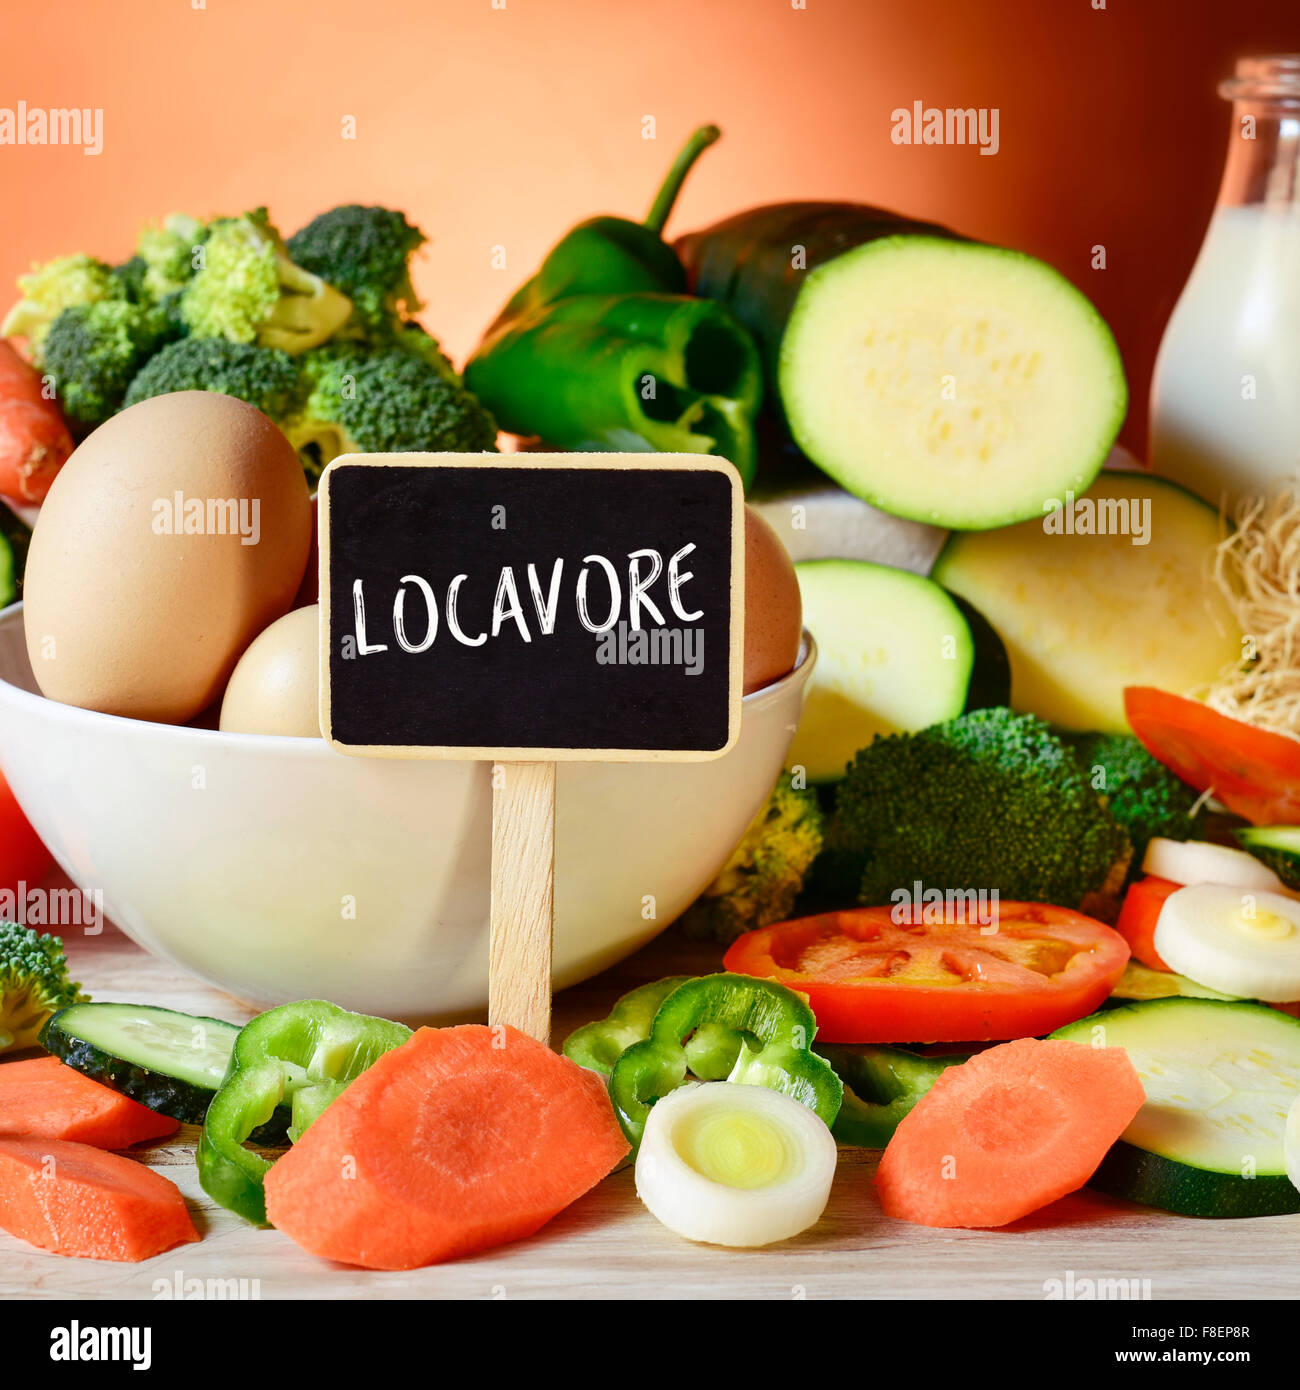 Libre d'une pancarte avec le mot locavore sur une table pleine de légumes crus différents, un bol avec quelques oeufs de poule et un b Banque D'Images